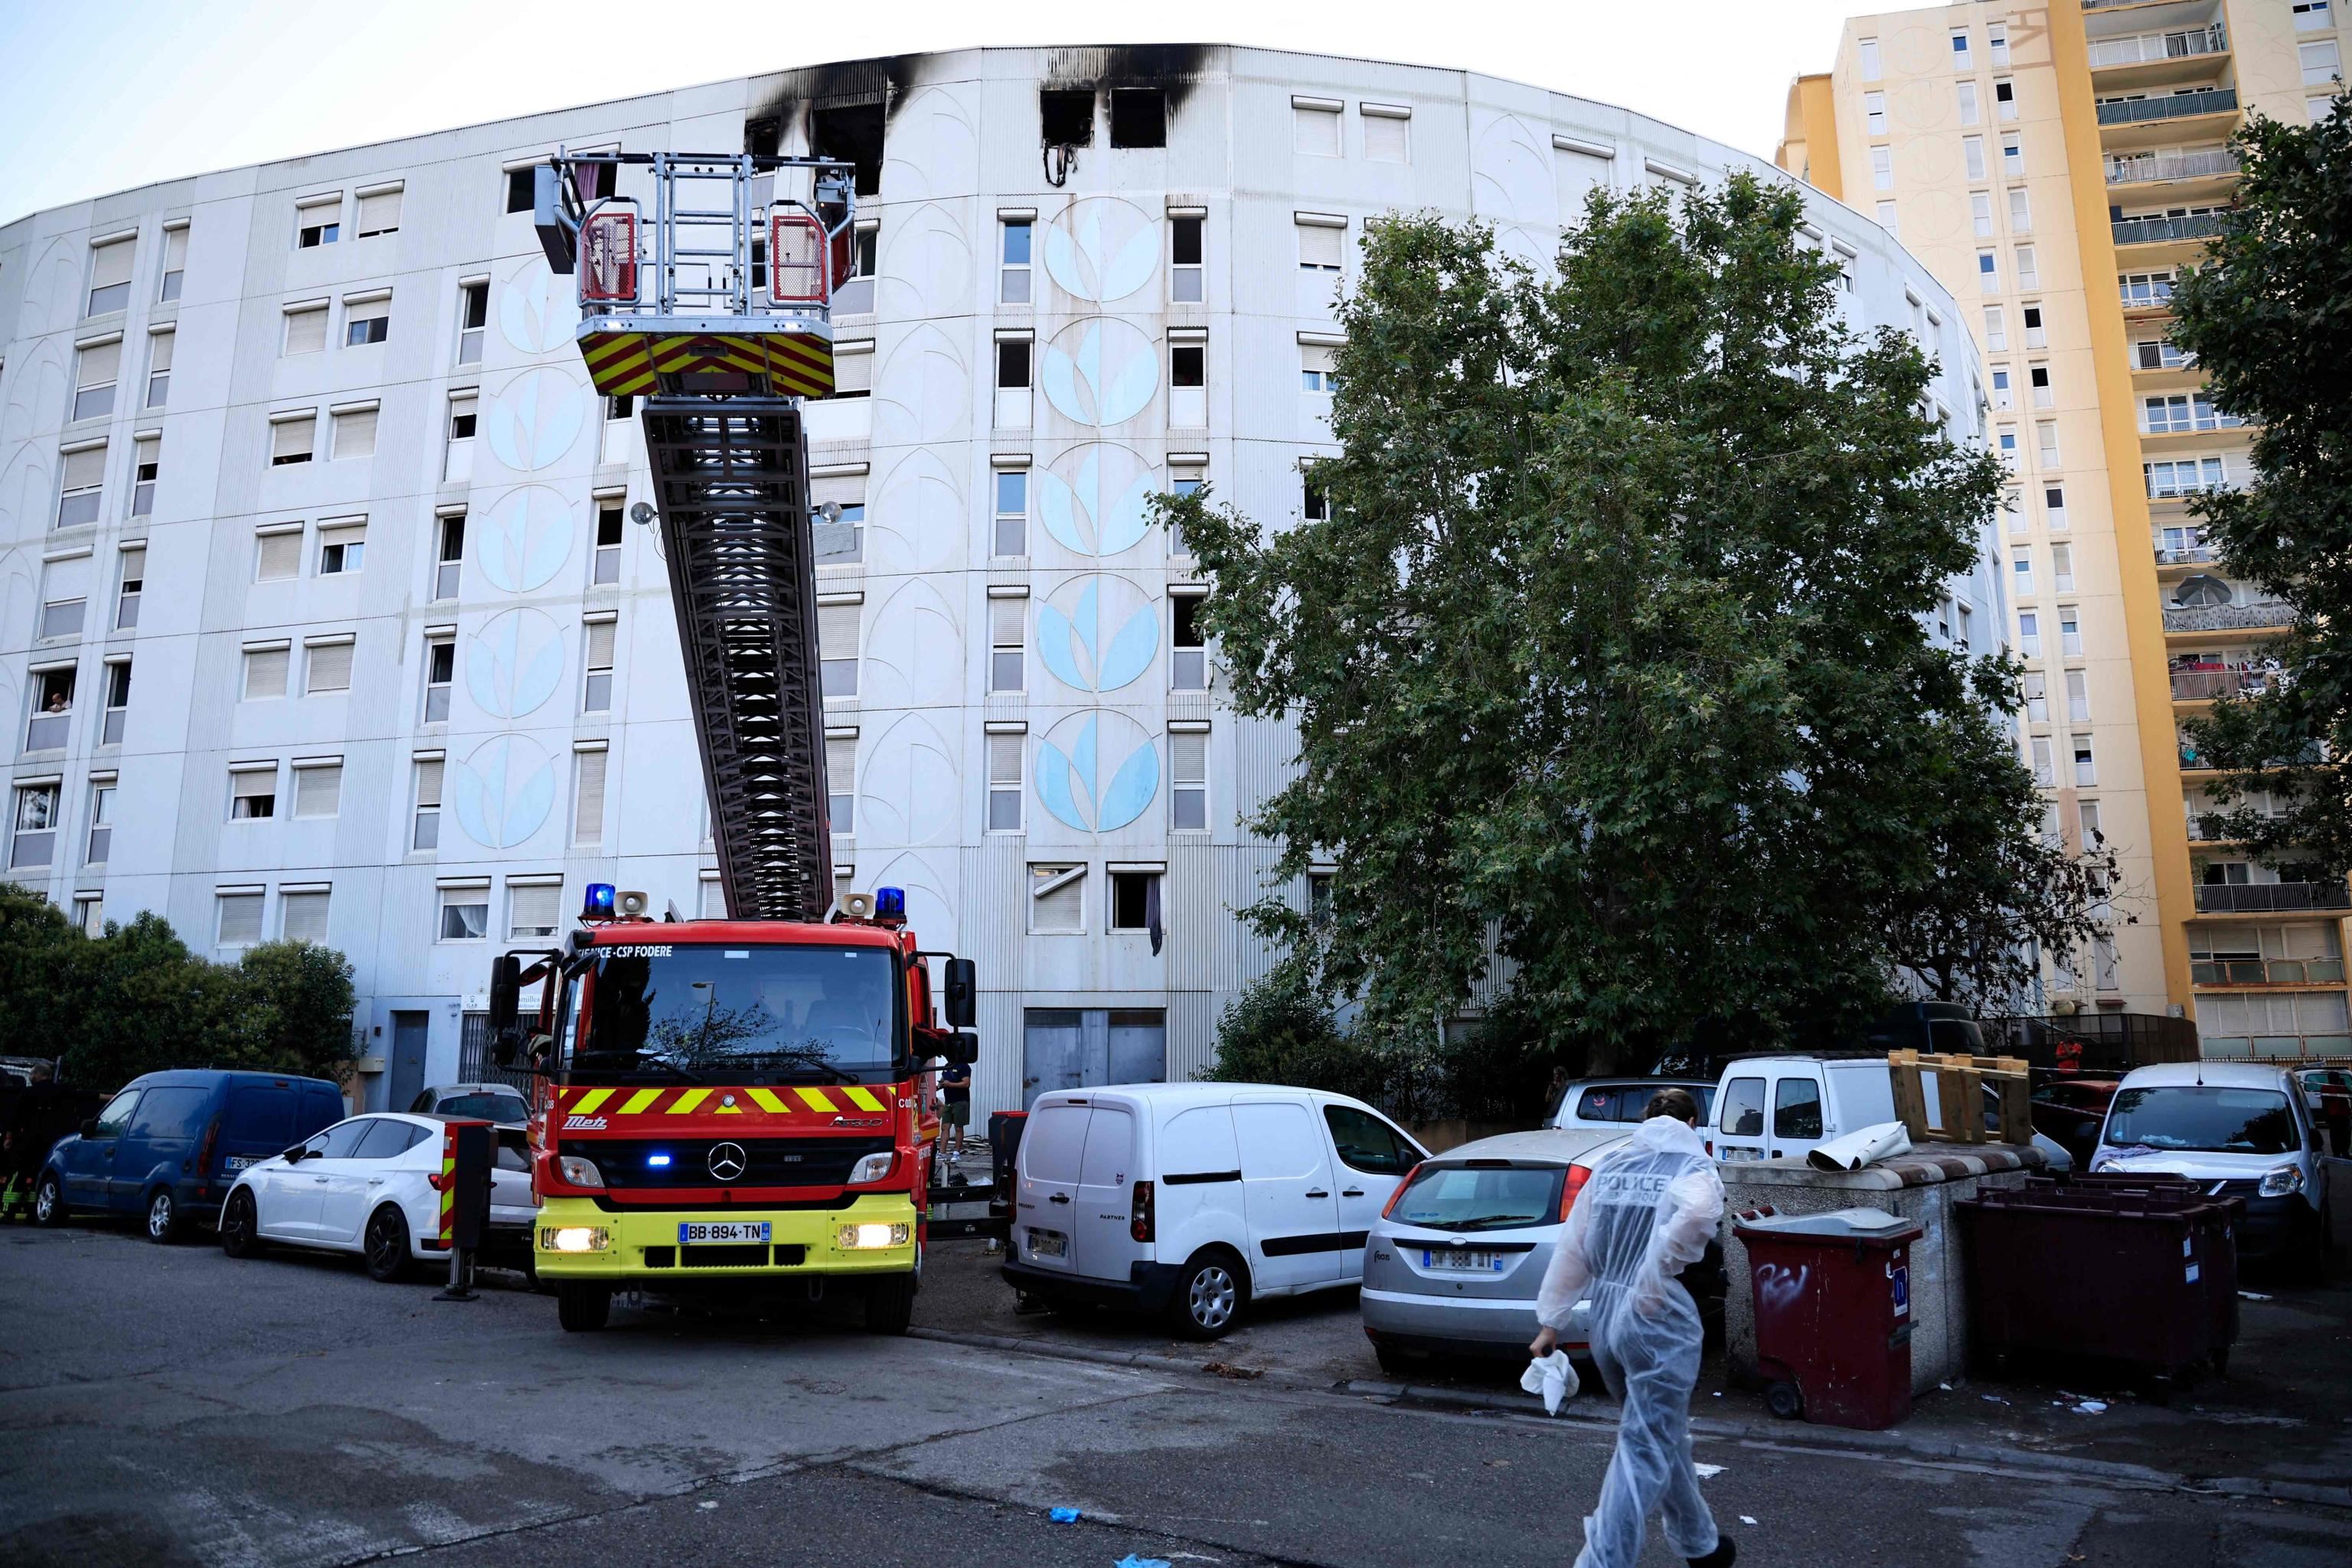 In fiamme un palazzo a Nizza: morte sette persone, tre sono bambini